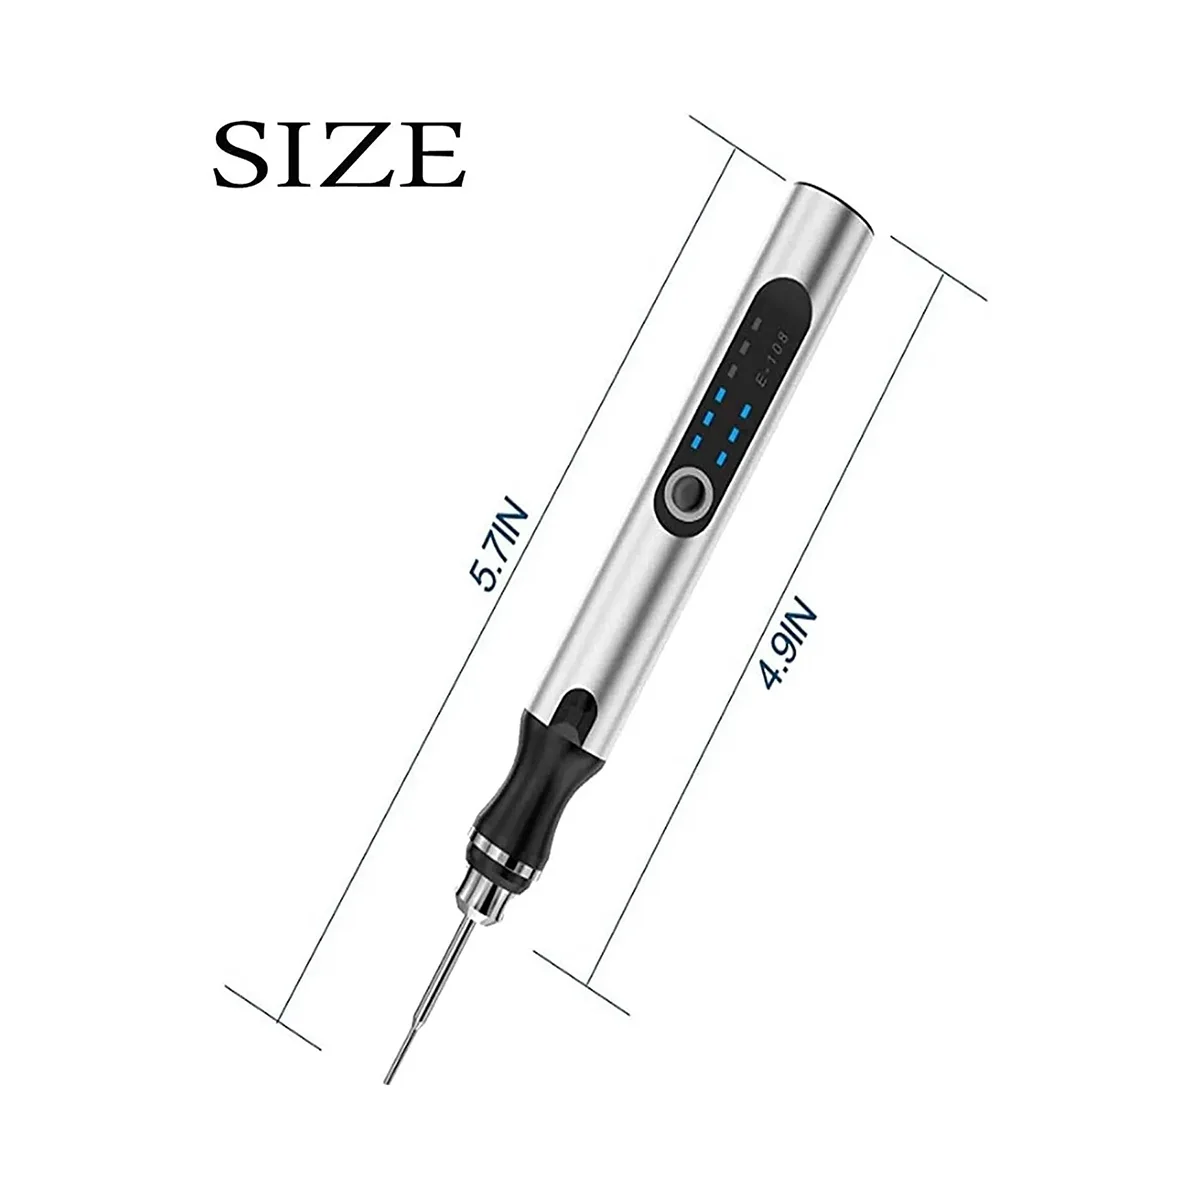 USB Customizer pena ukir profesional 30 bit, pena ukir dapat diisi ulang tanpa kabel, alat pengukir untuk logam